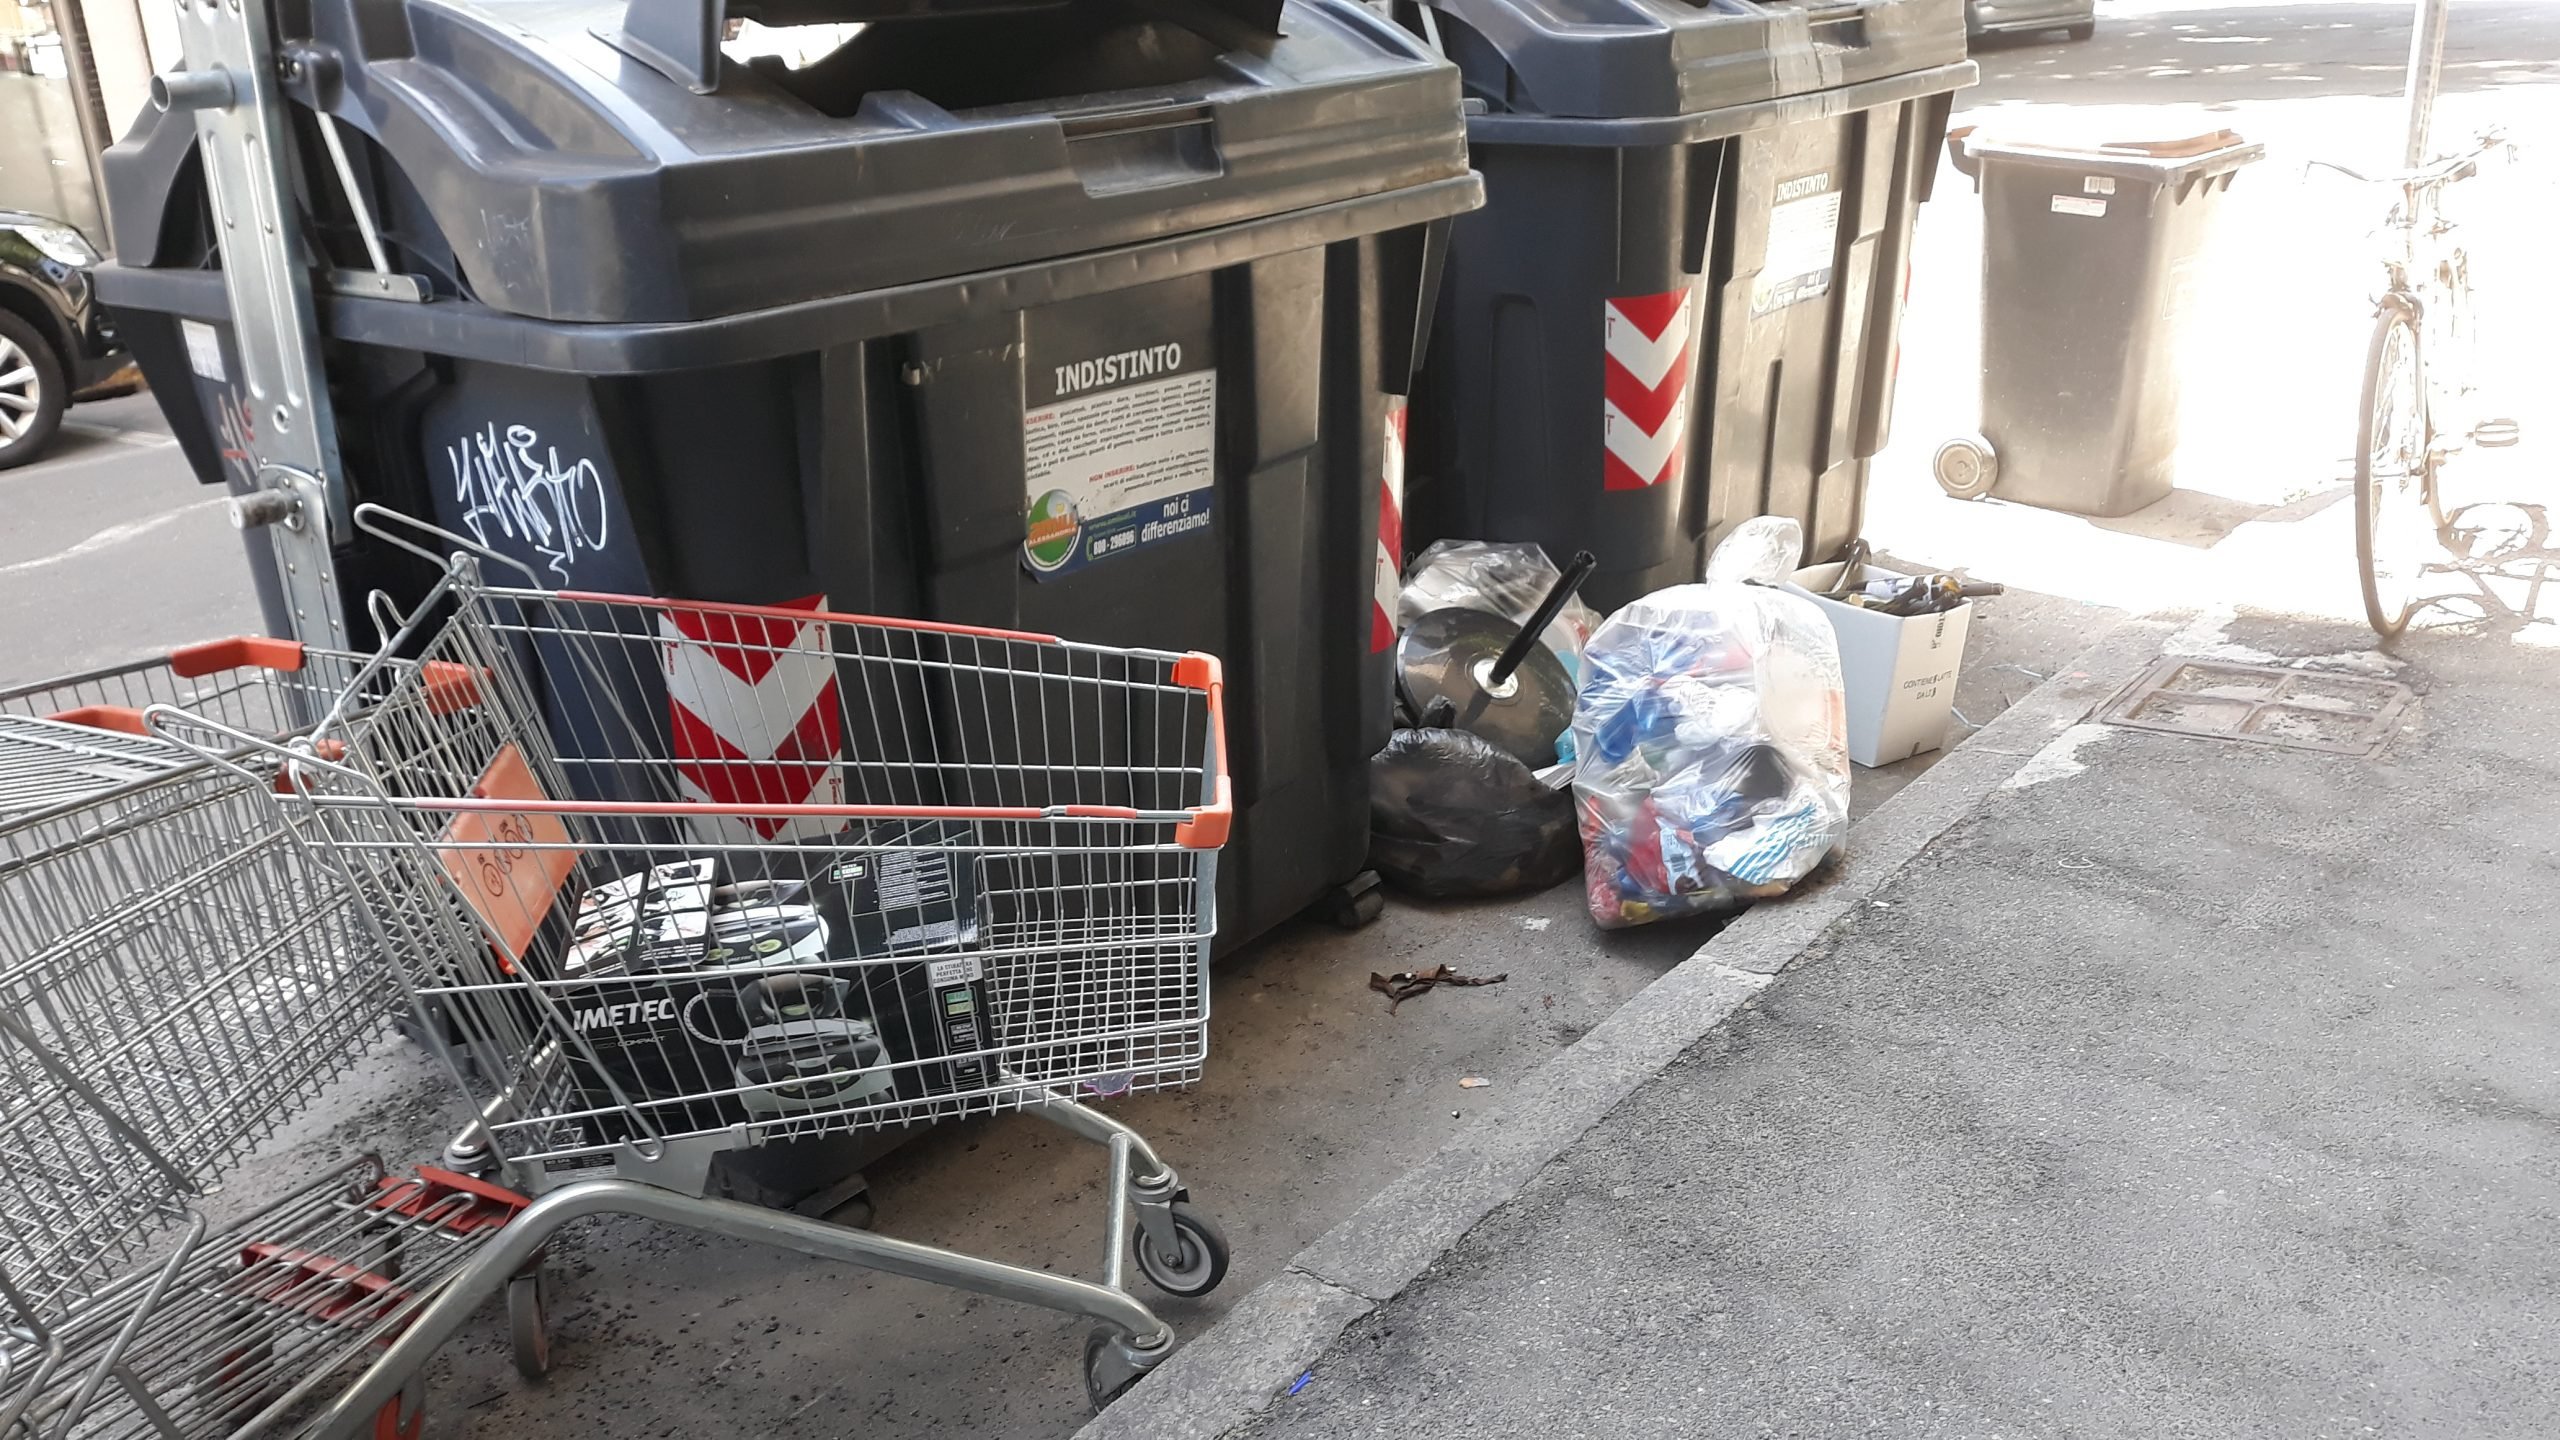 Carrelli e spazzatura ovunque in via Montegrappa ad Alessandria: “Inciviltà inaccettabile”